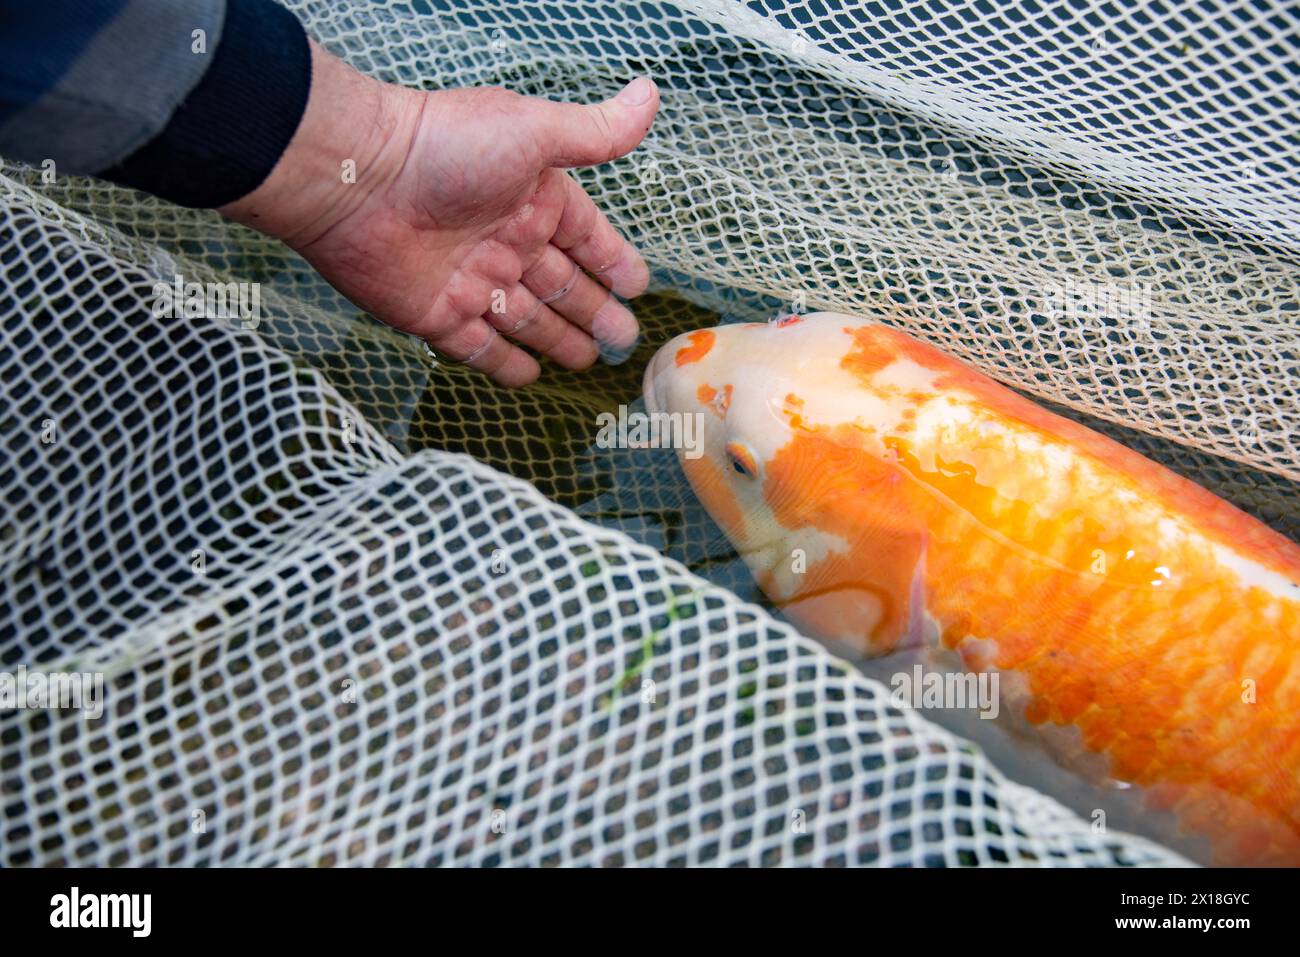 Une main touche doucement une carpe koï couchée dans un filet, Allemagne Banque D'Images